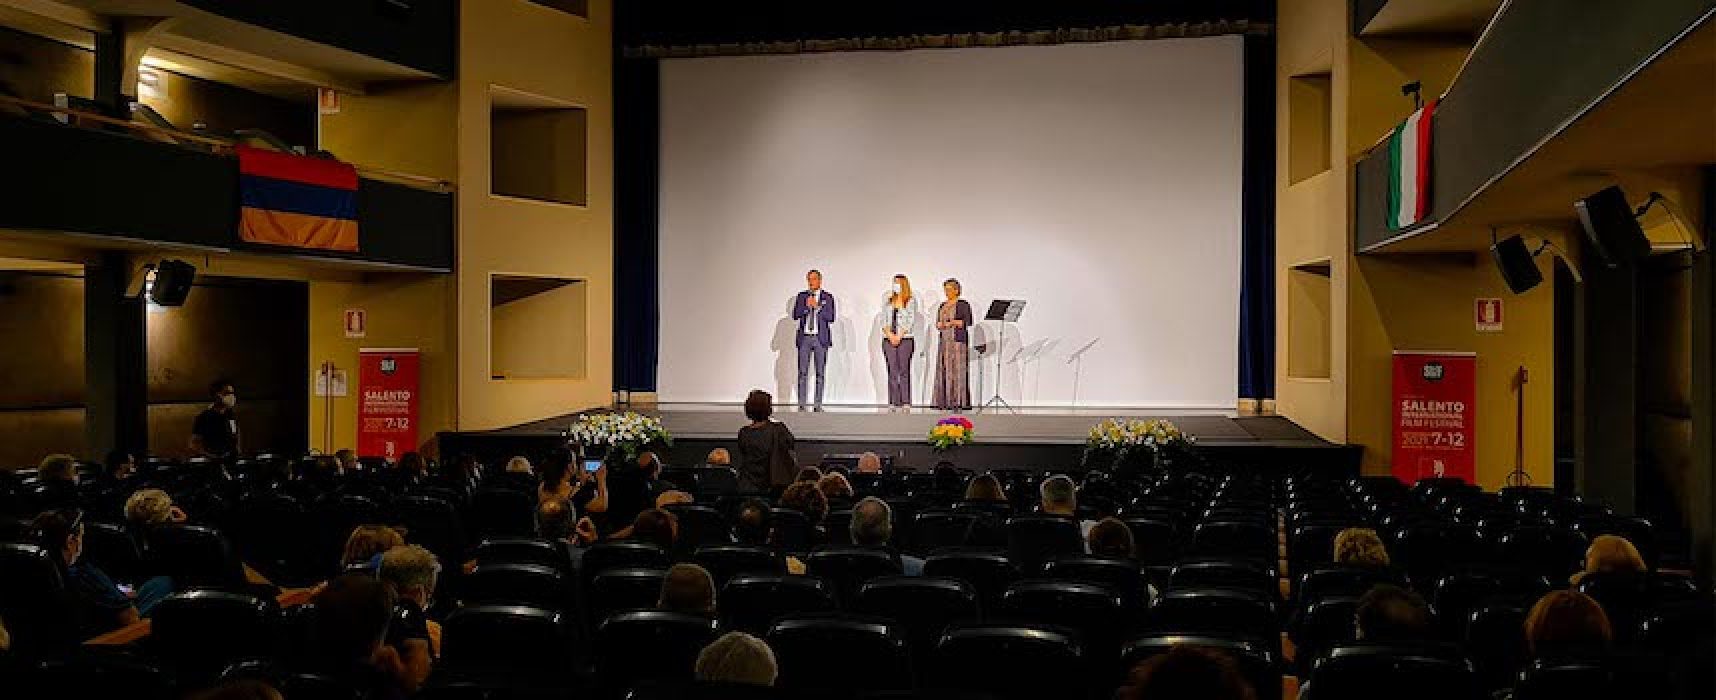 Salento International Film Festival, ad ottobre la cerimonia di premiazione